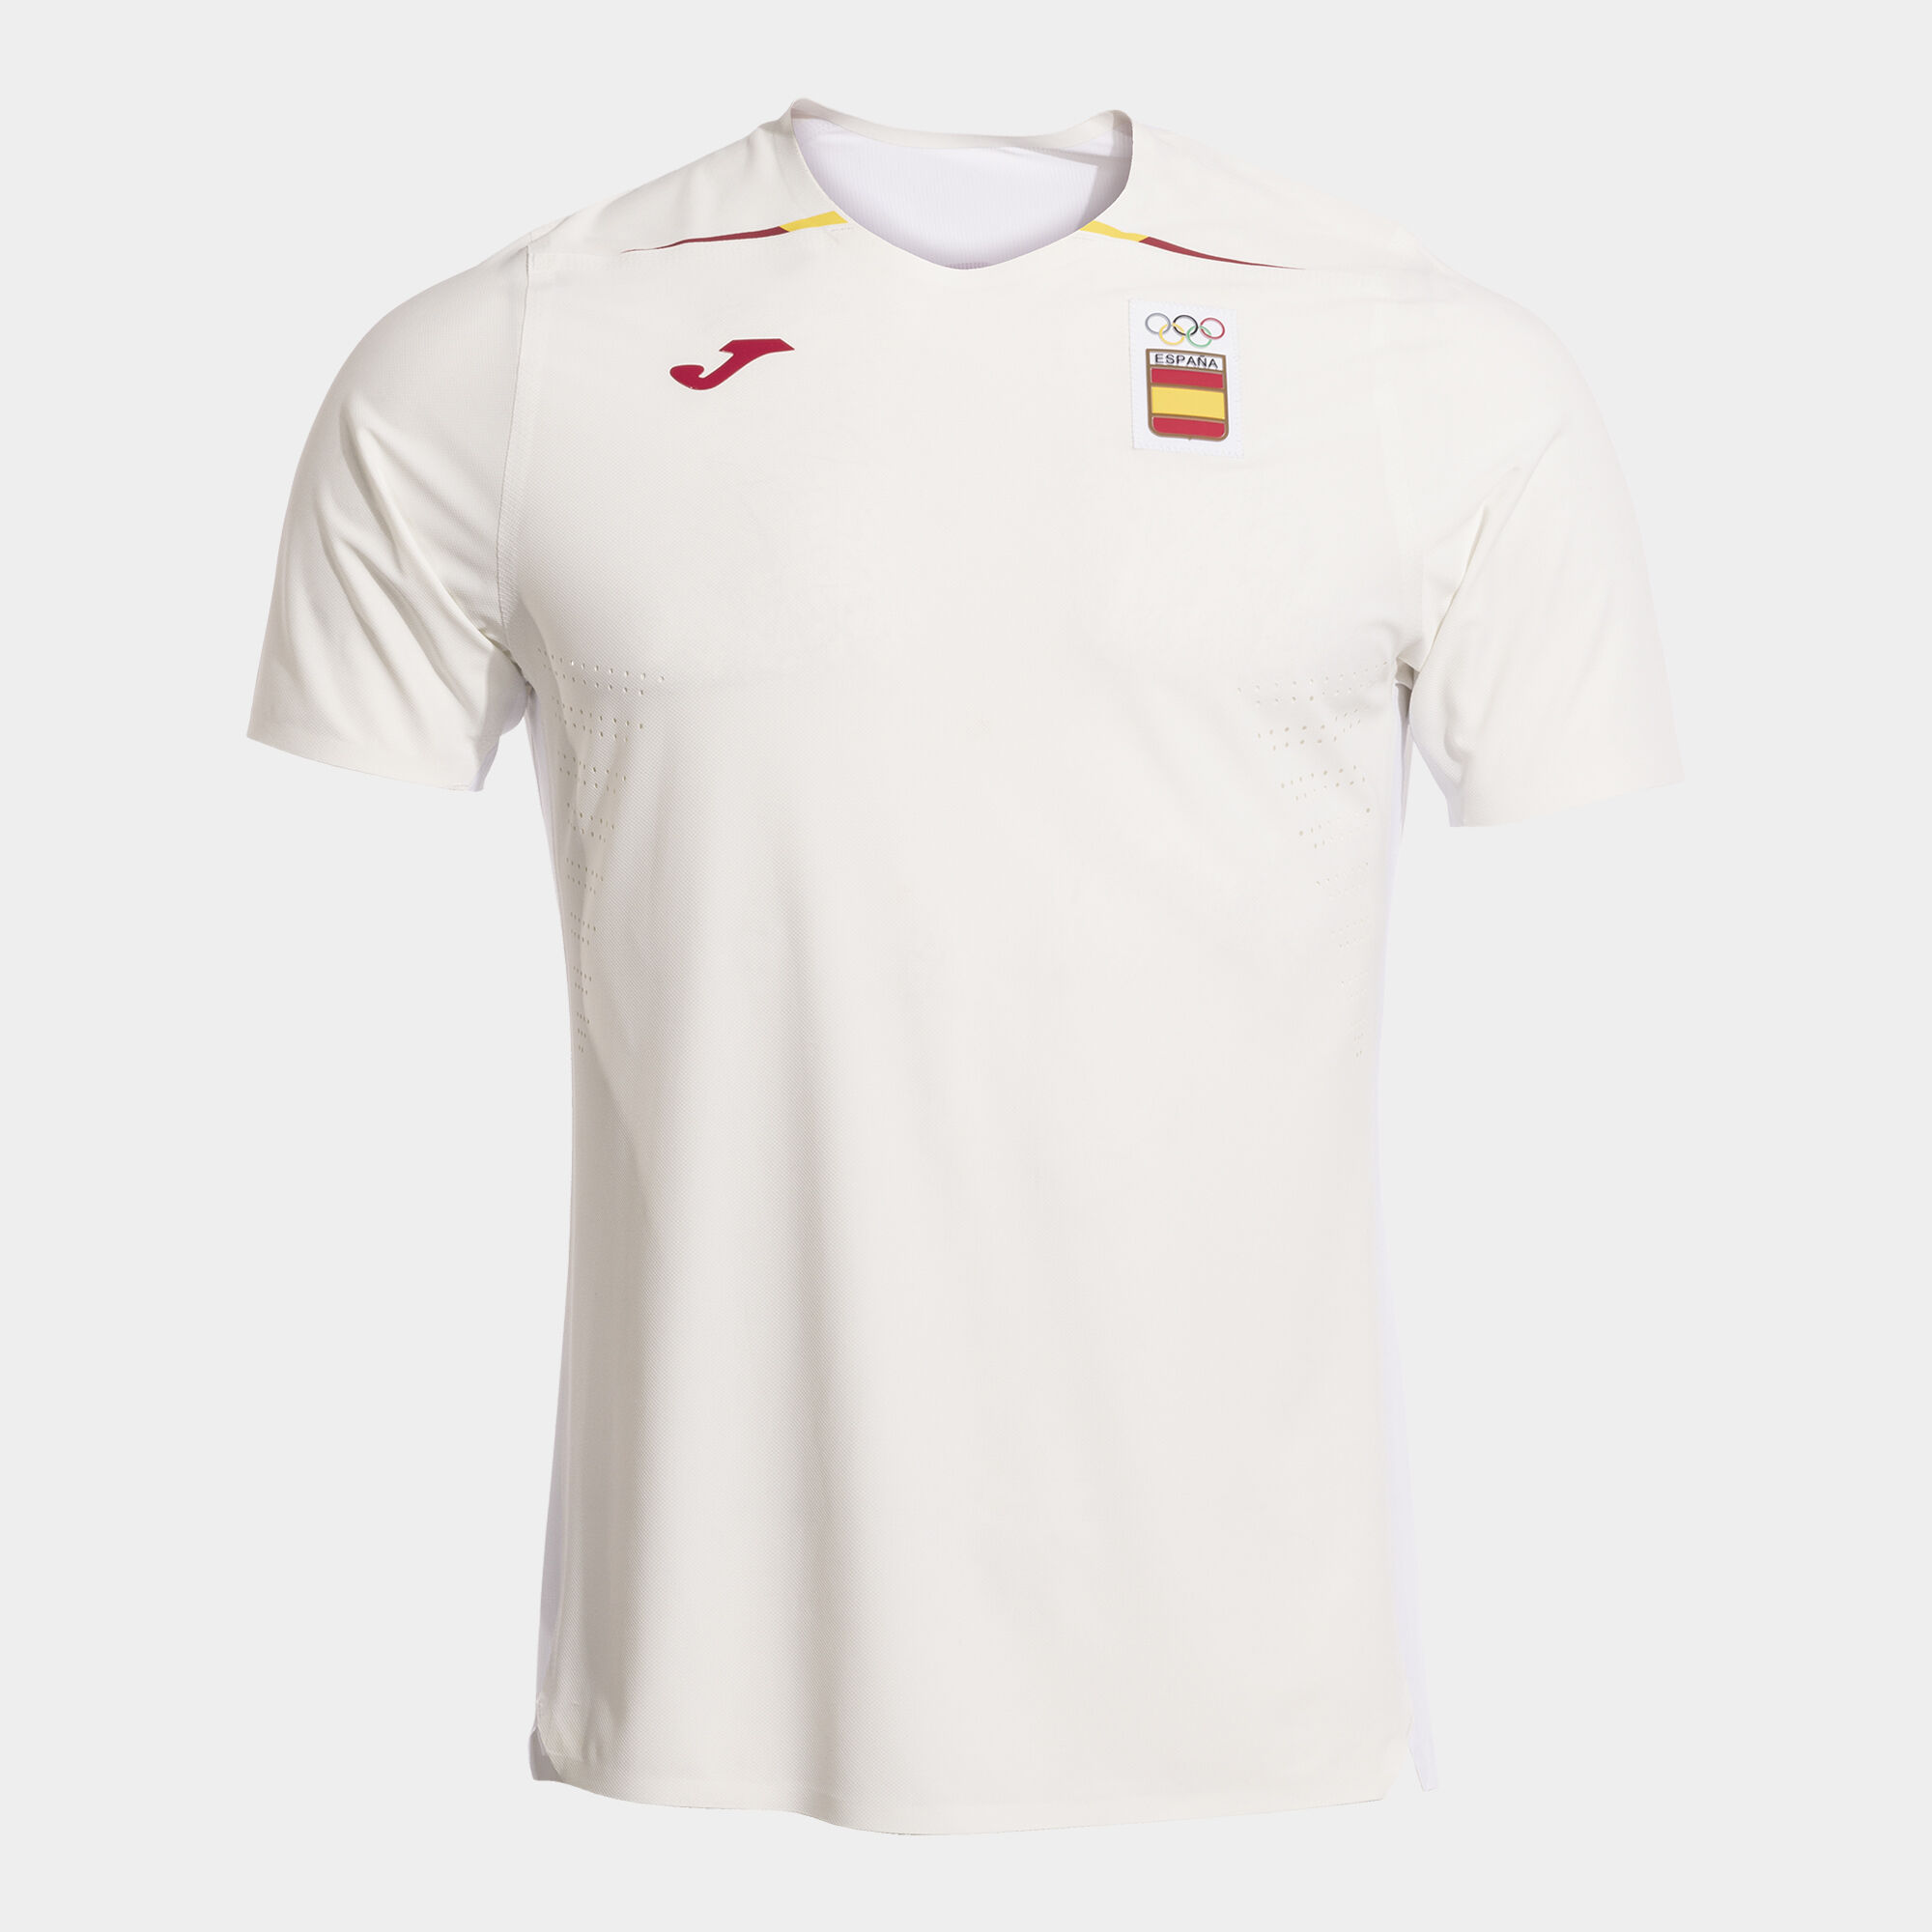 Camiseta manga corta podium Comité Olímpico Español